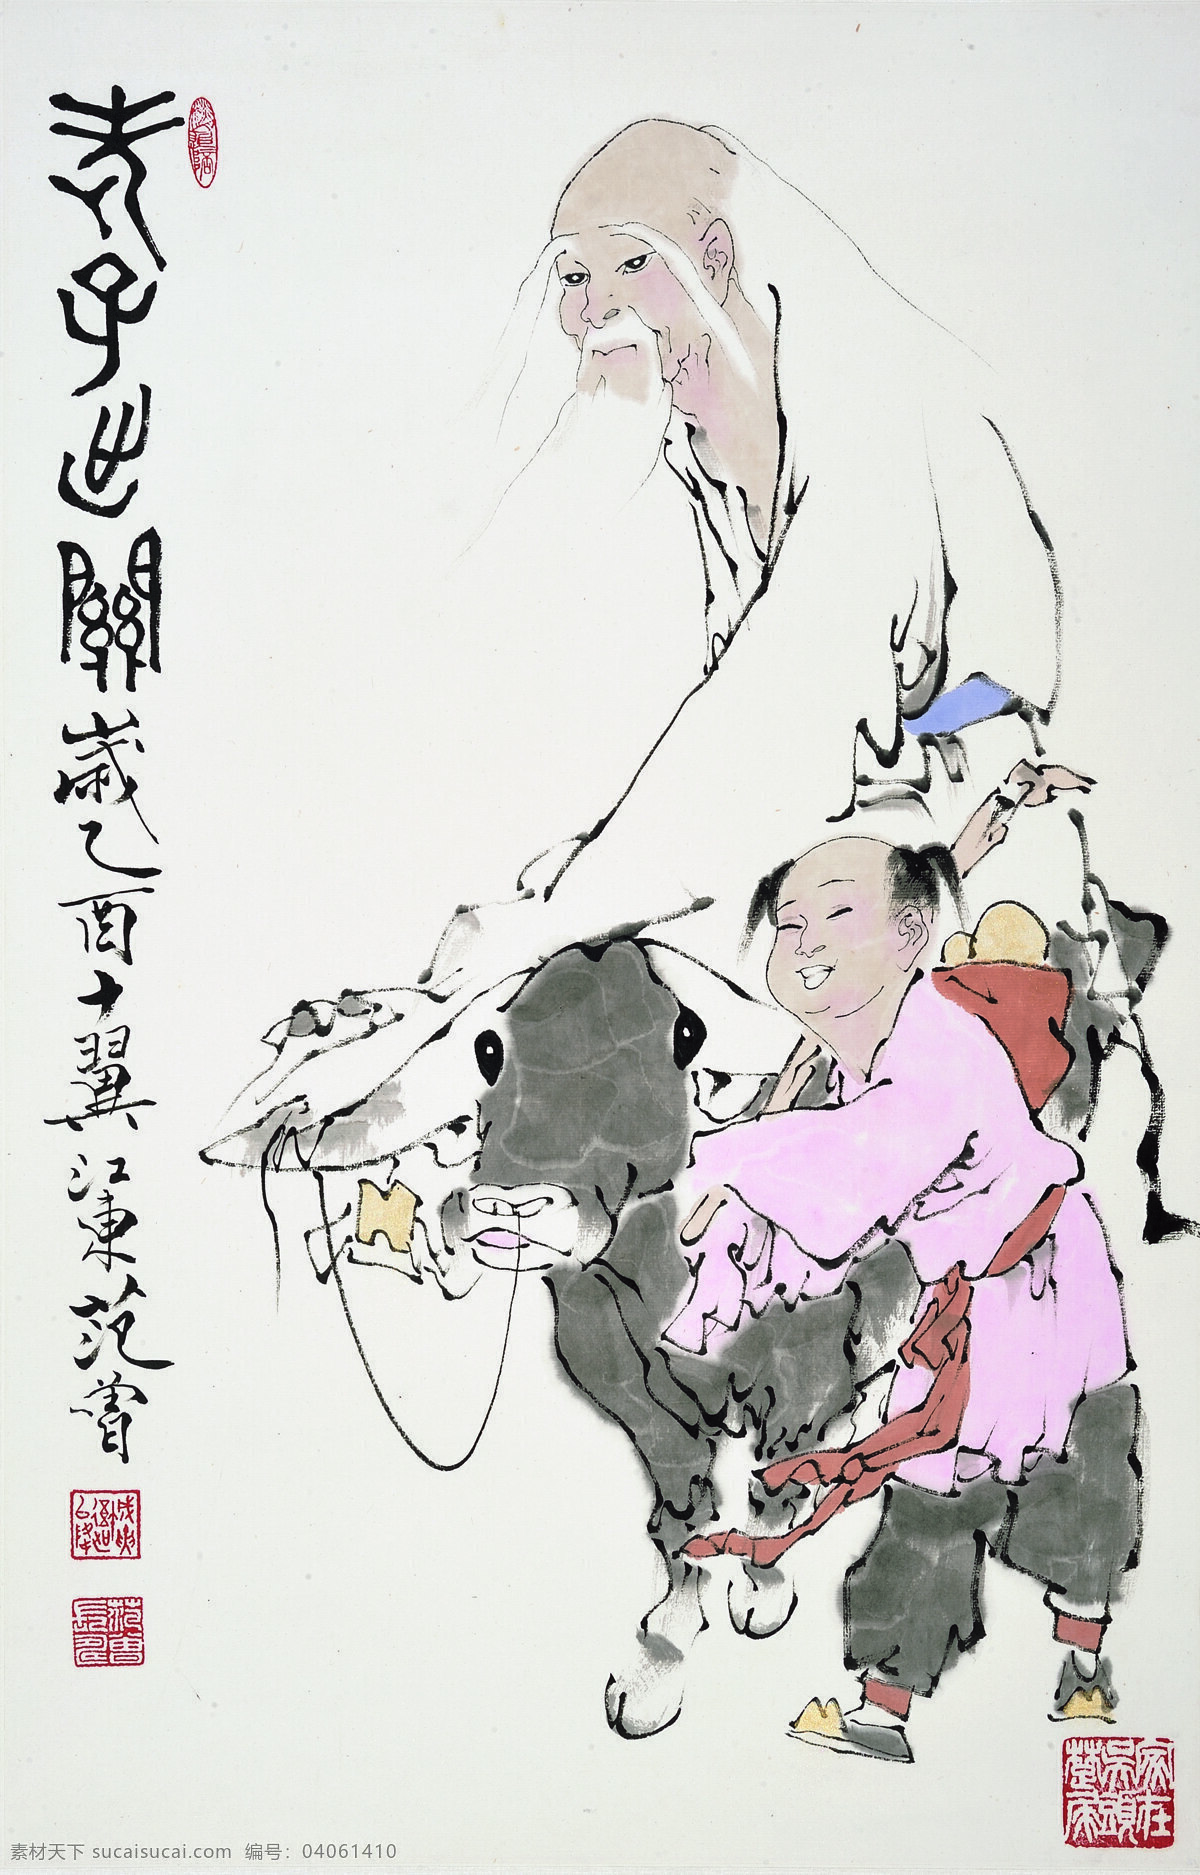 艺术 绘画 老子 出关 艺术绘画 老子出关图 中国画 文化艺术 绘画书法 设计图库